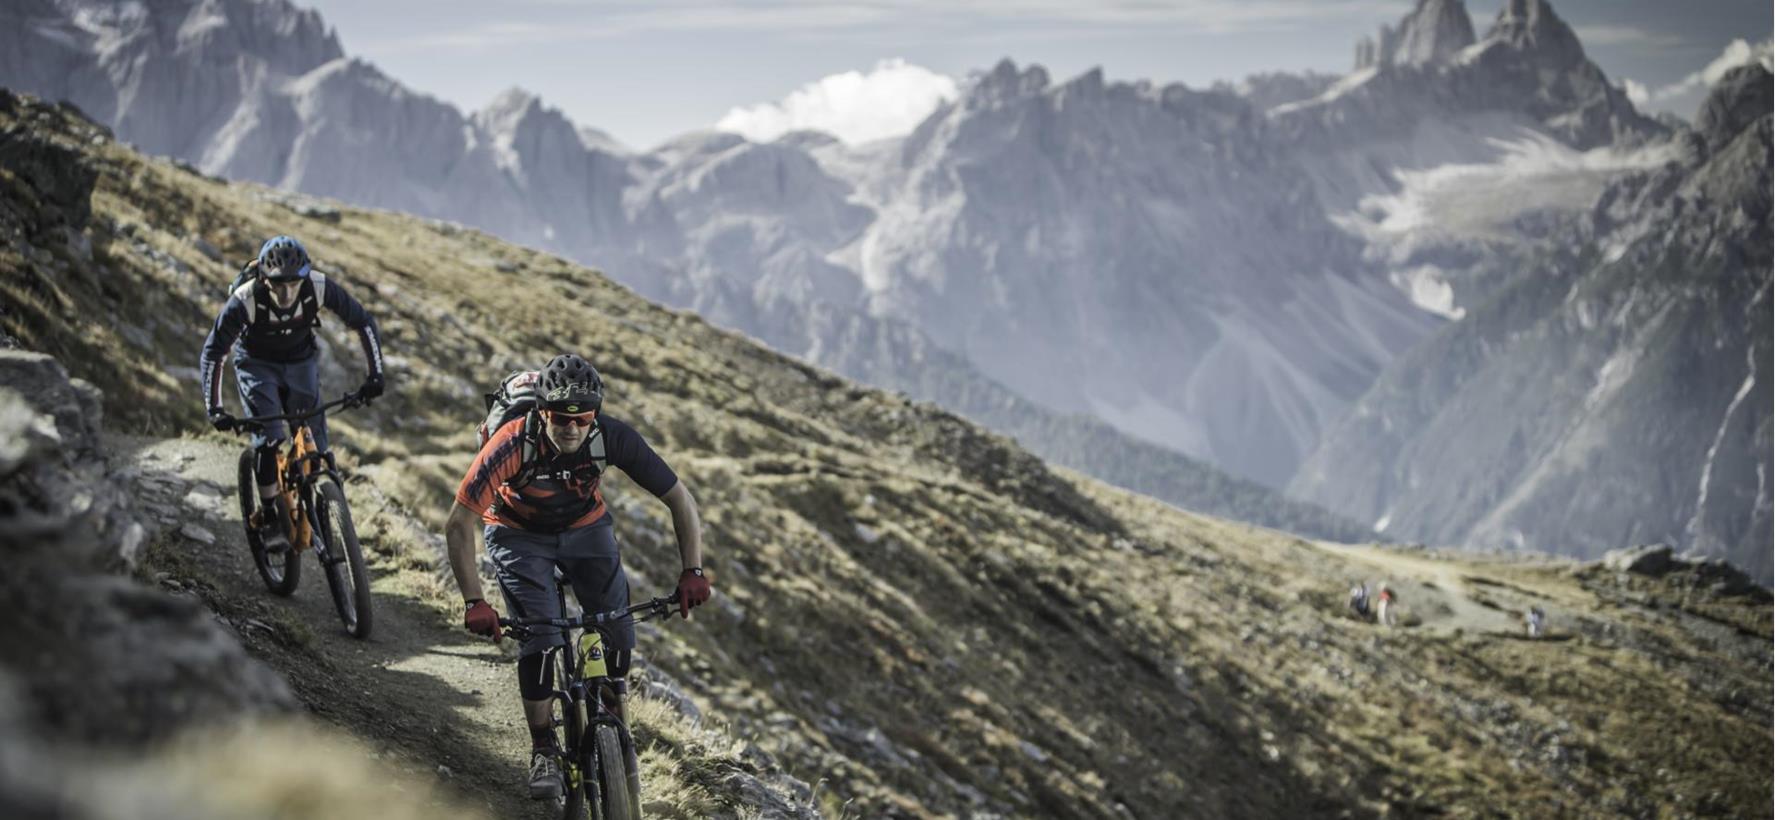 Mountainbike Tour in the Dolomites